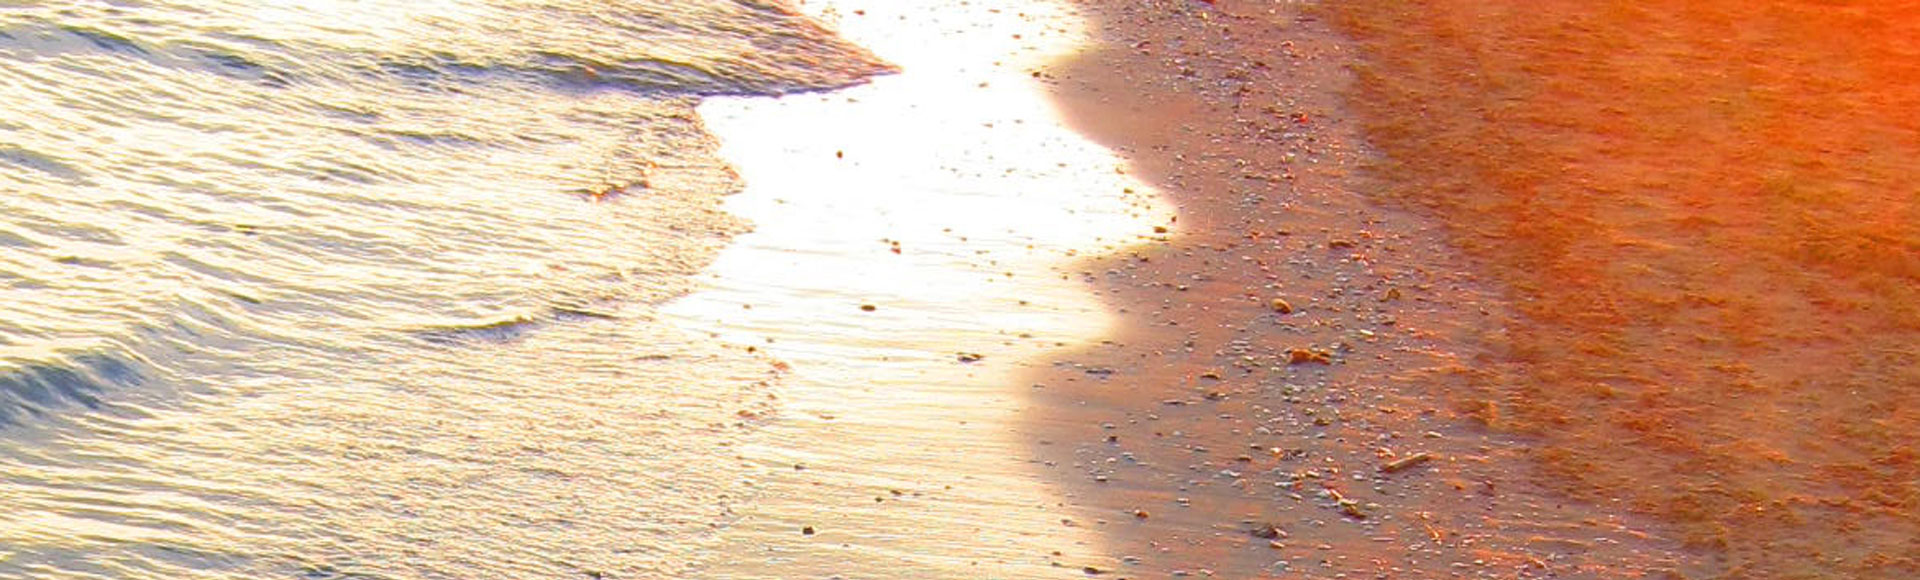 weiße Welle rollt auf roten Sandstrand Wechseljahre Naturseminar